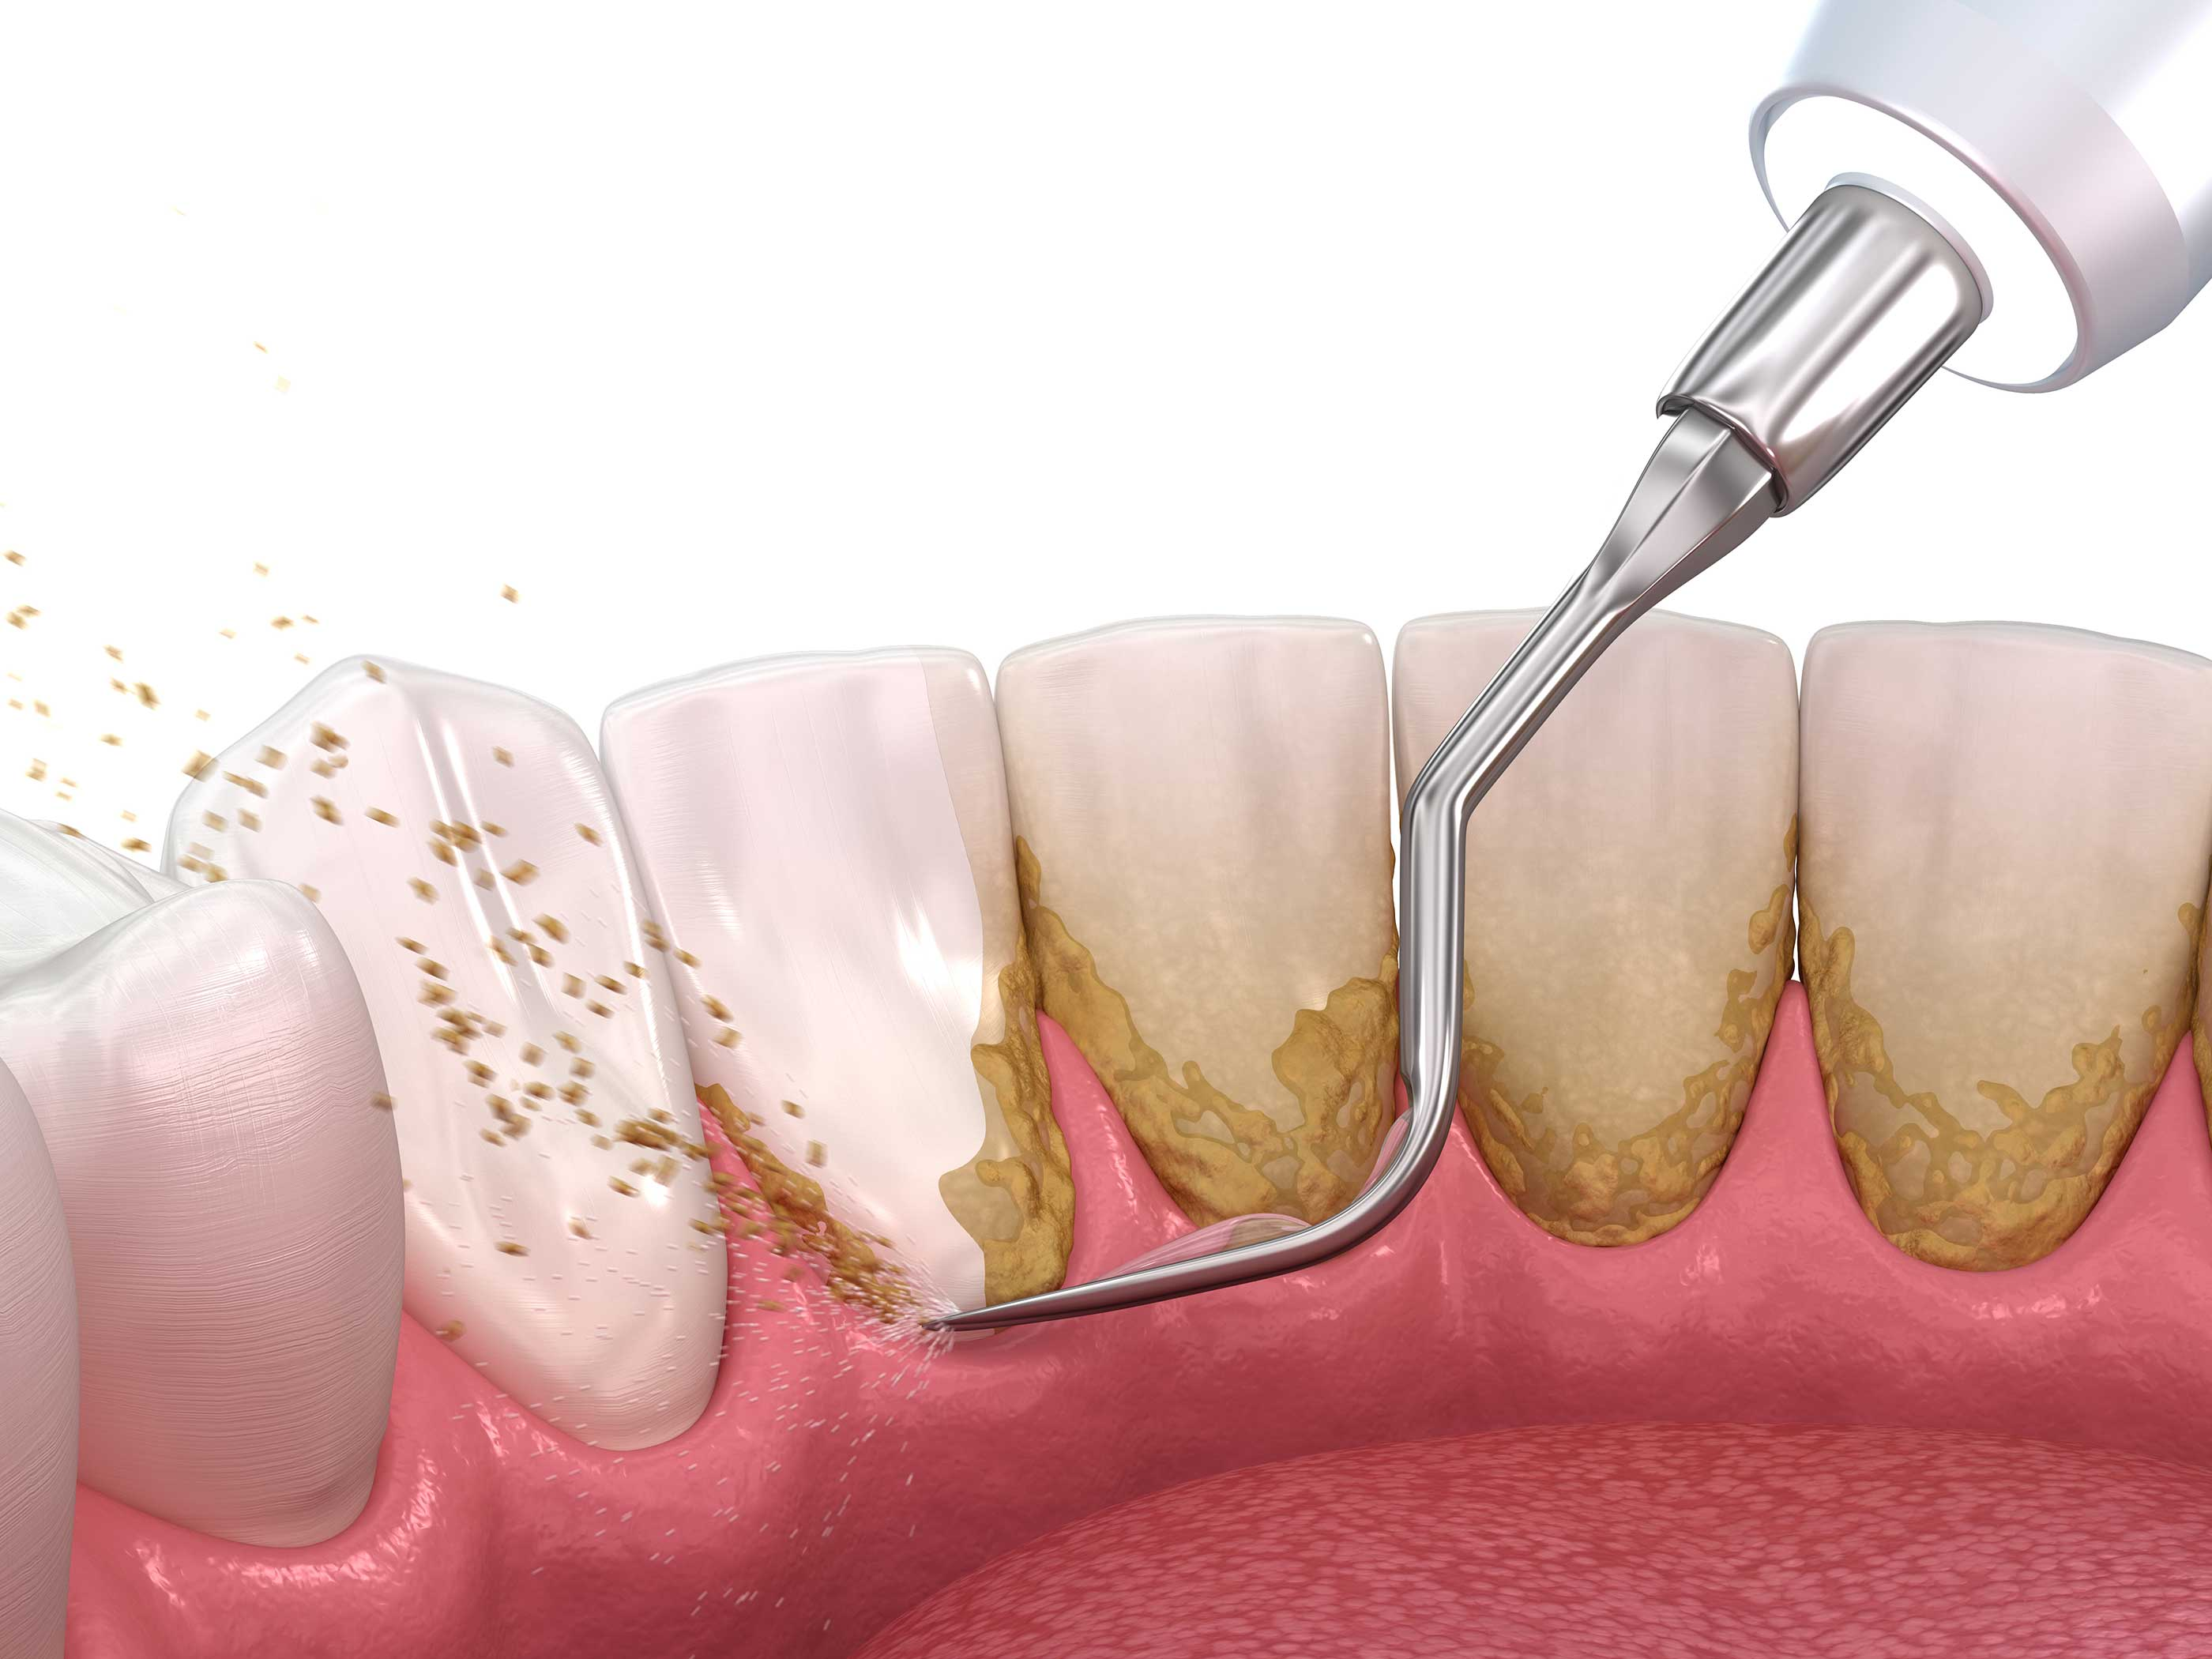 Hos tannlegen kan du få fjernet tannstein 